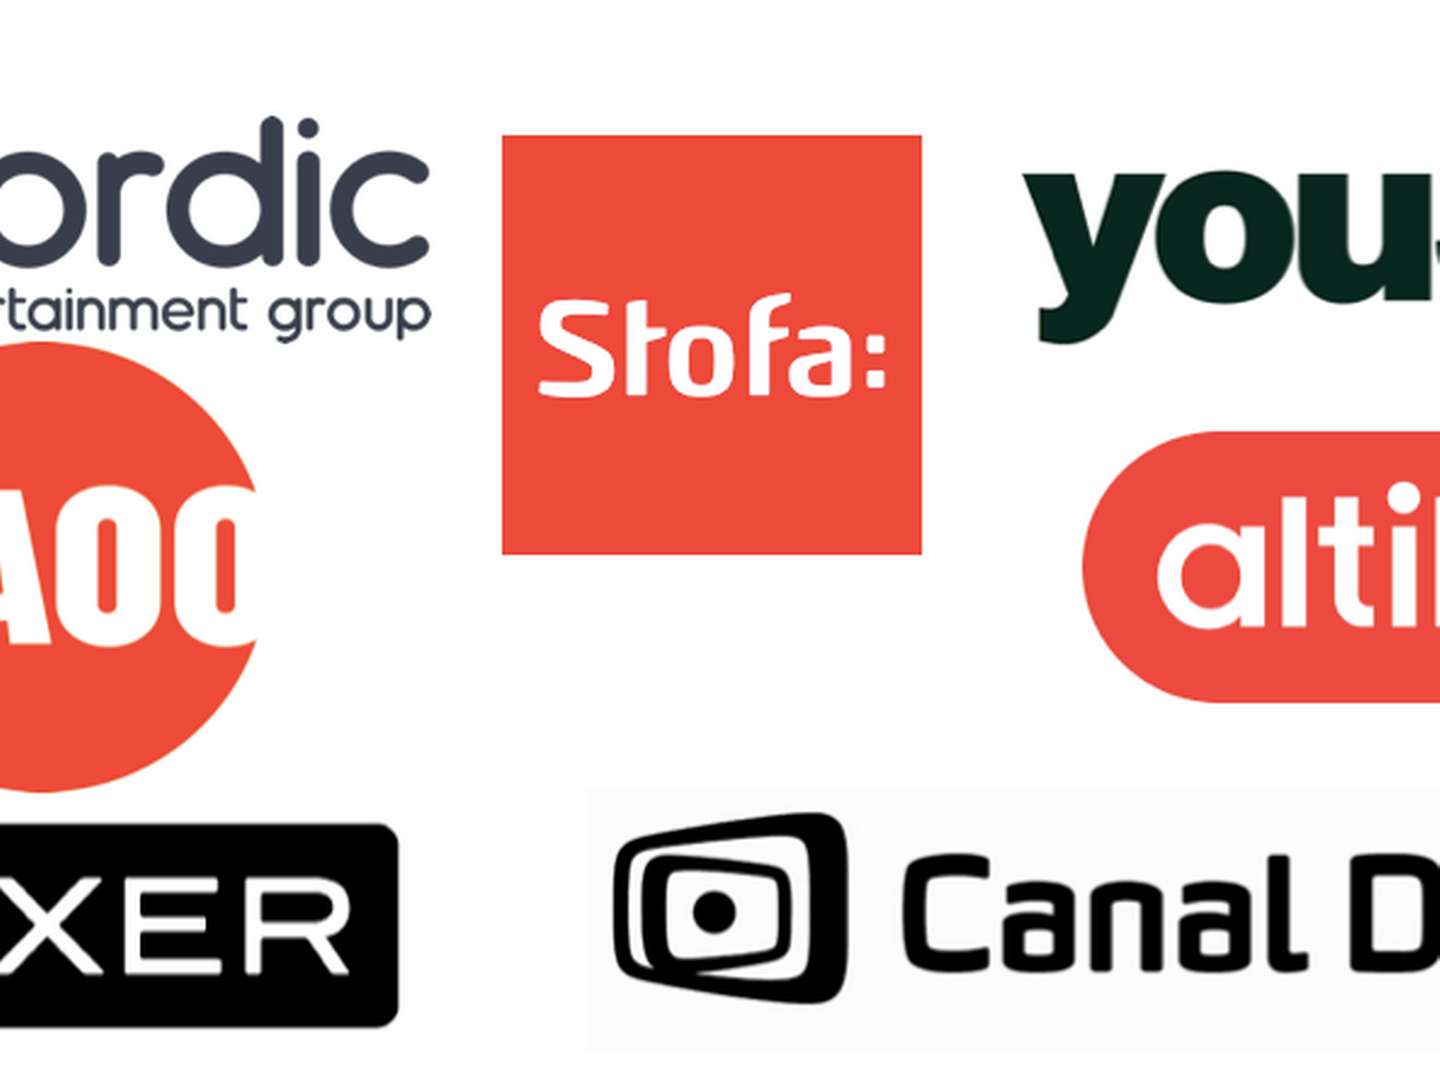 Danske Mediedistributører har i dag Altibox, Canal Digital, Nordic Entertainment Group, Norlys, Waoo og Nuuday som medlemmer.